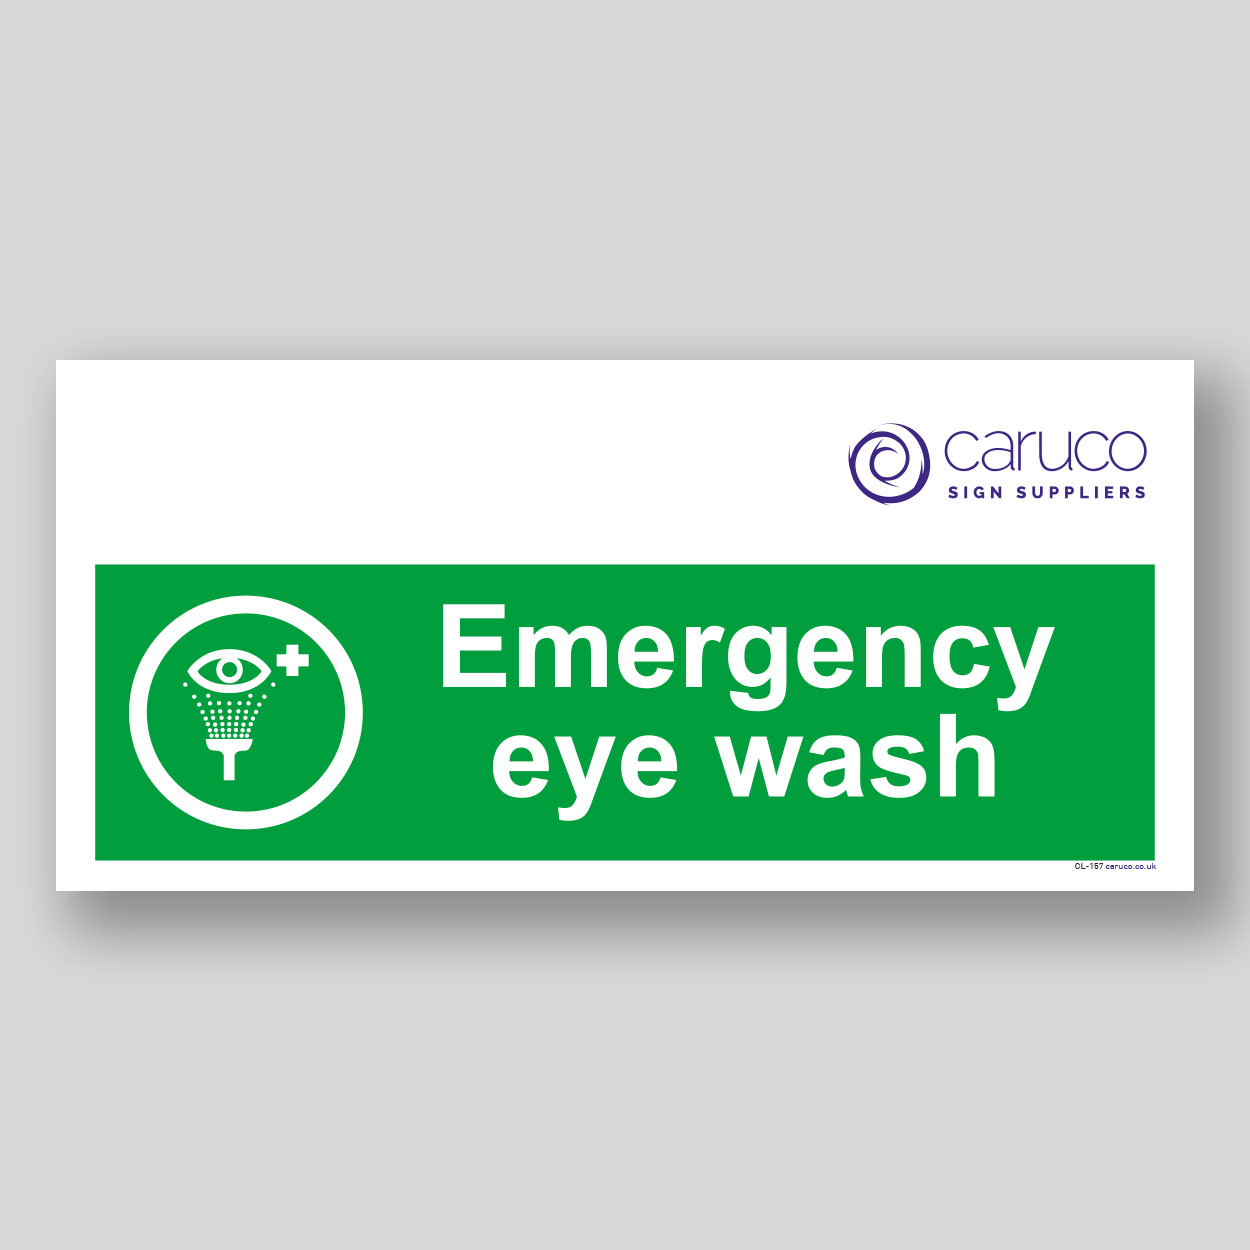 CL-157 Emergency eye wash